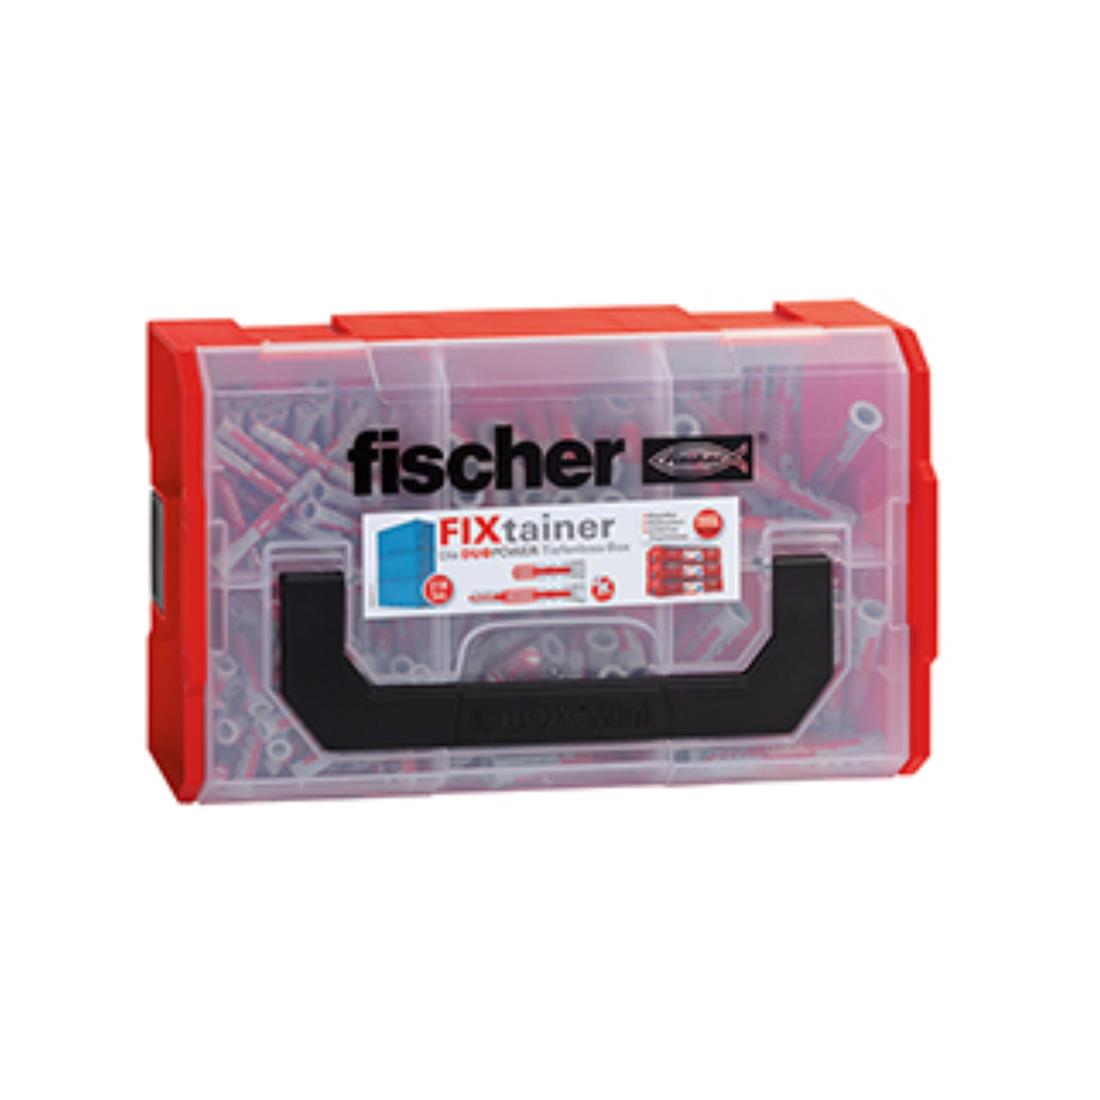 Fischer FIXtainer - DUOPOWER kurz/lang (210)